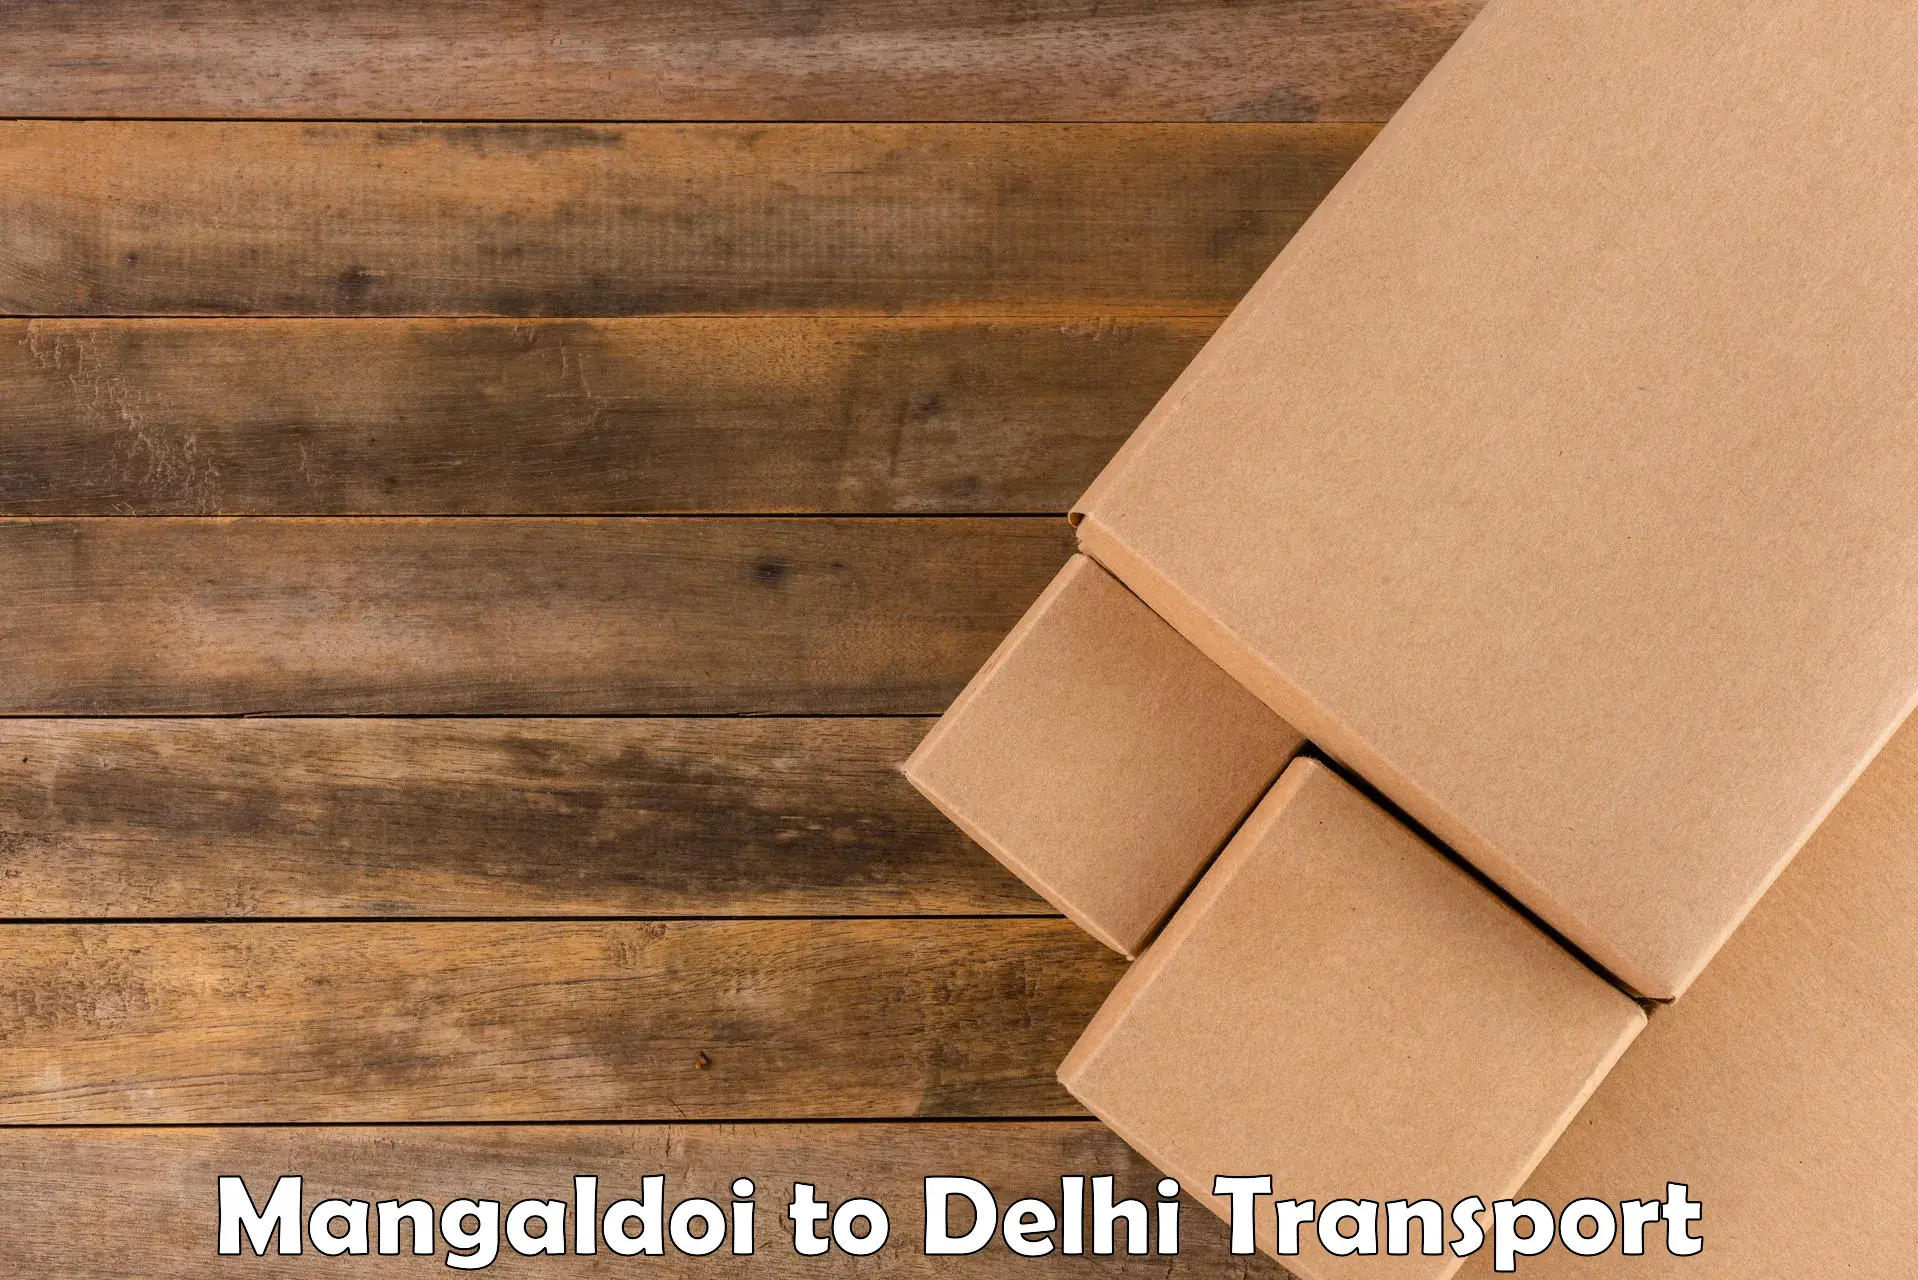 Delivery service Mangaldoi to East Delhi